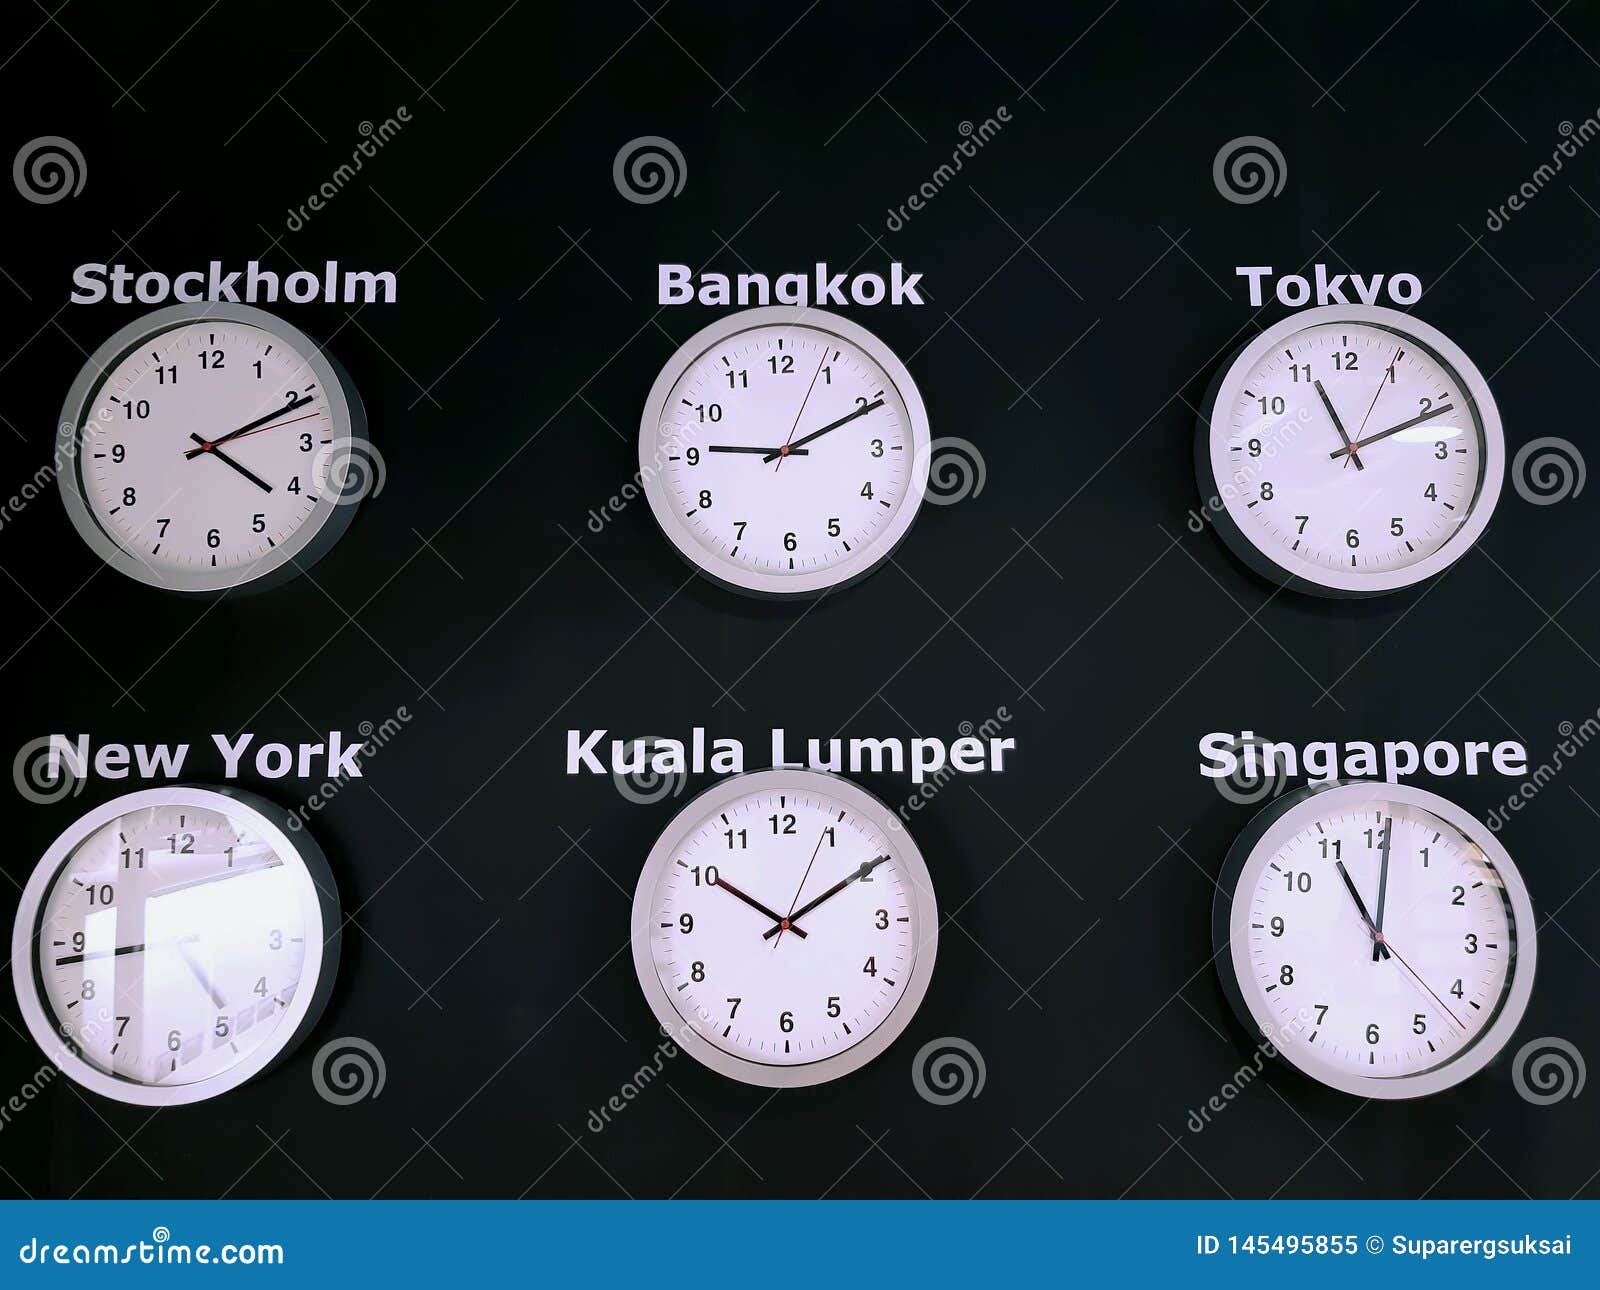 Часы показывающие время разных городов.